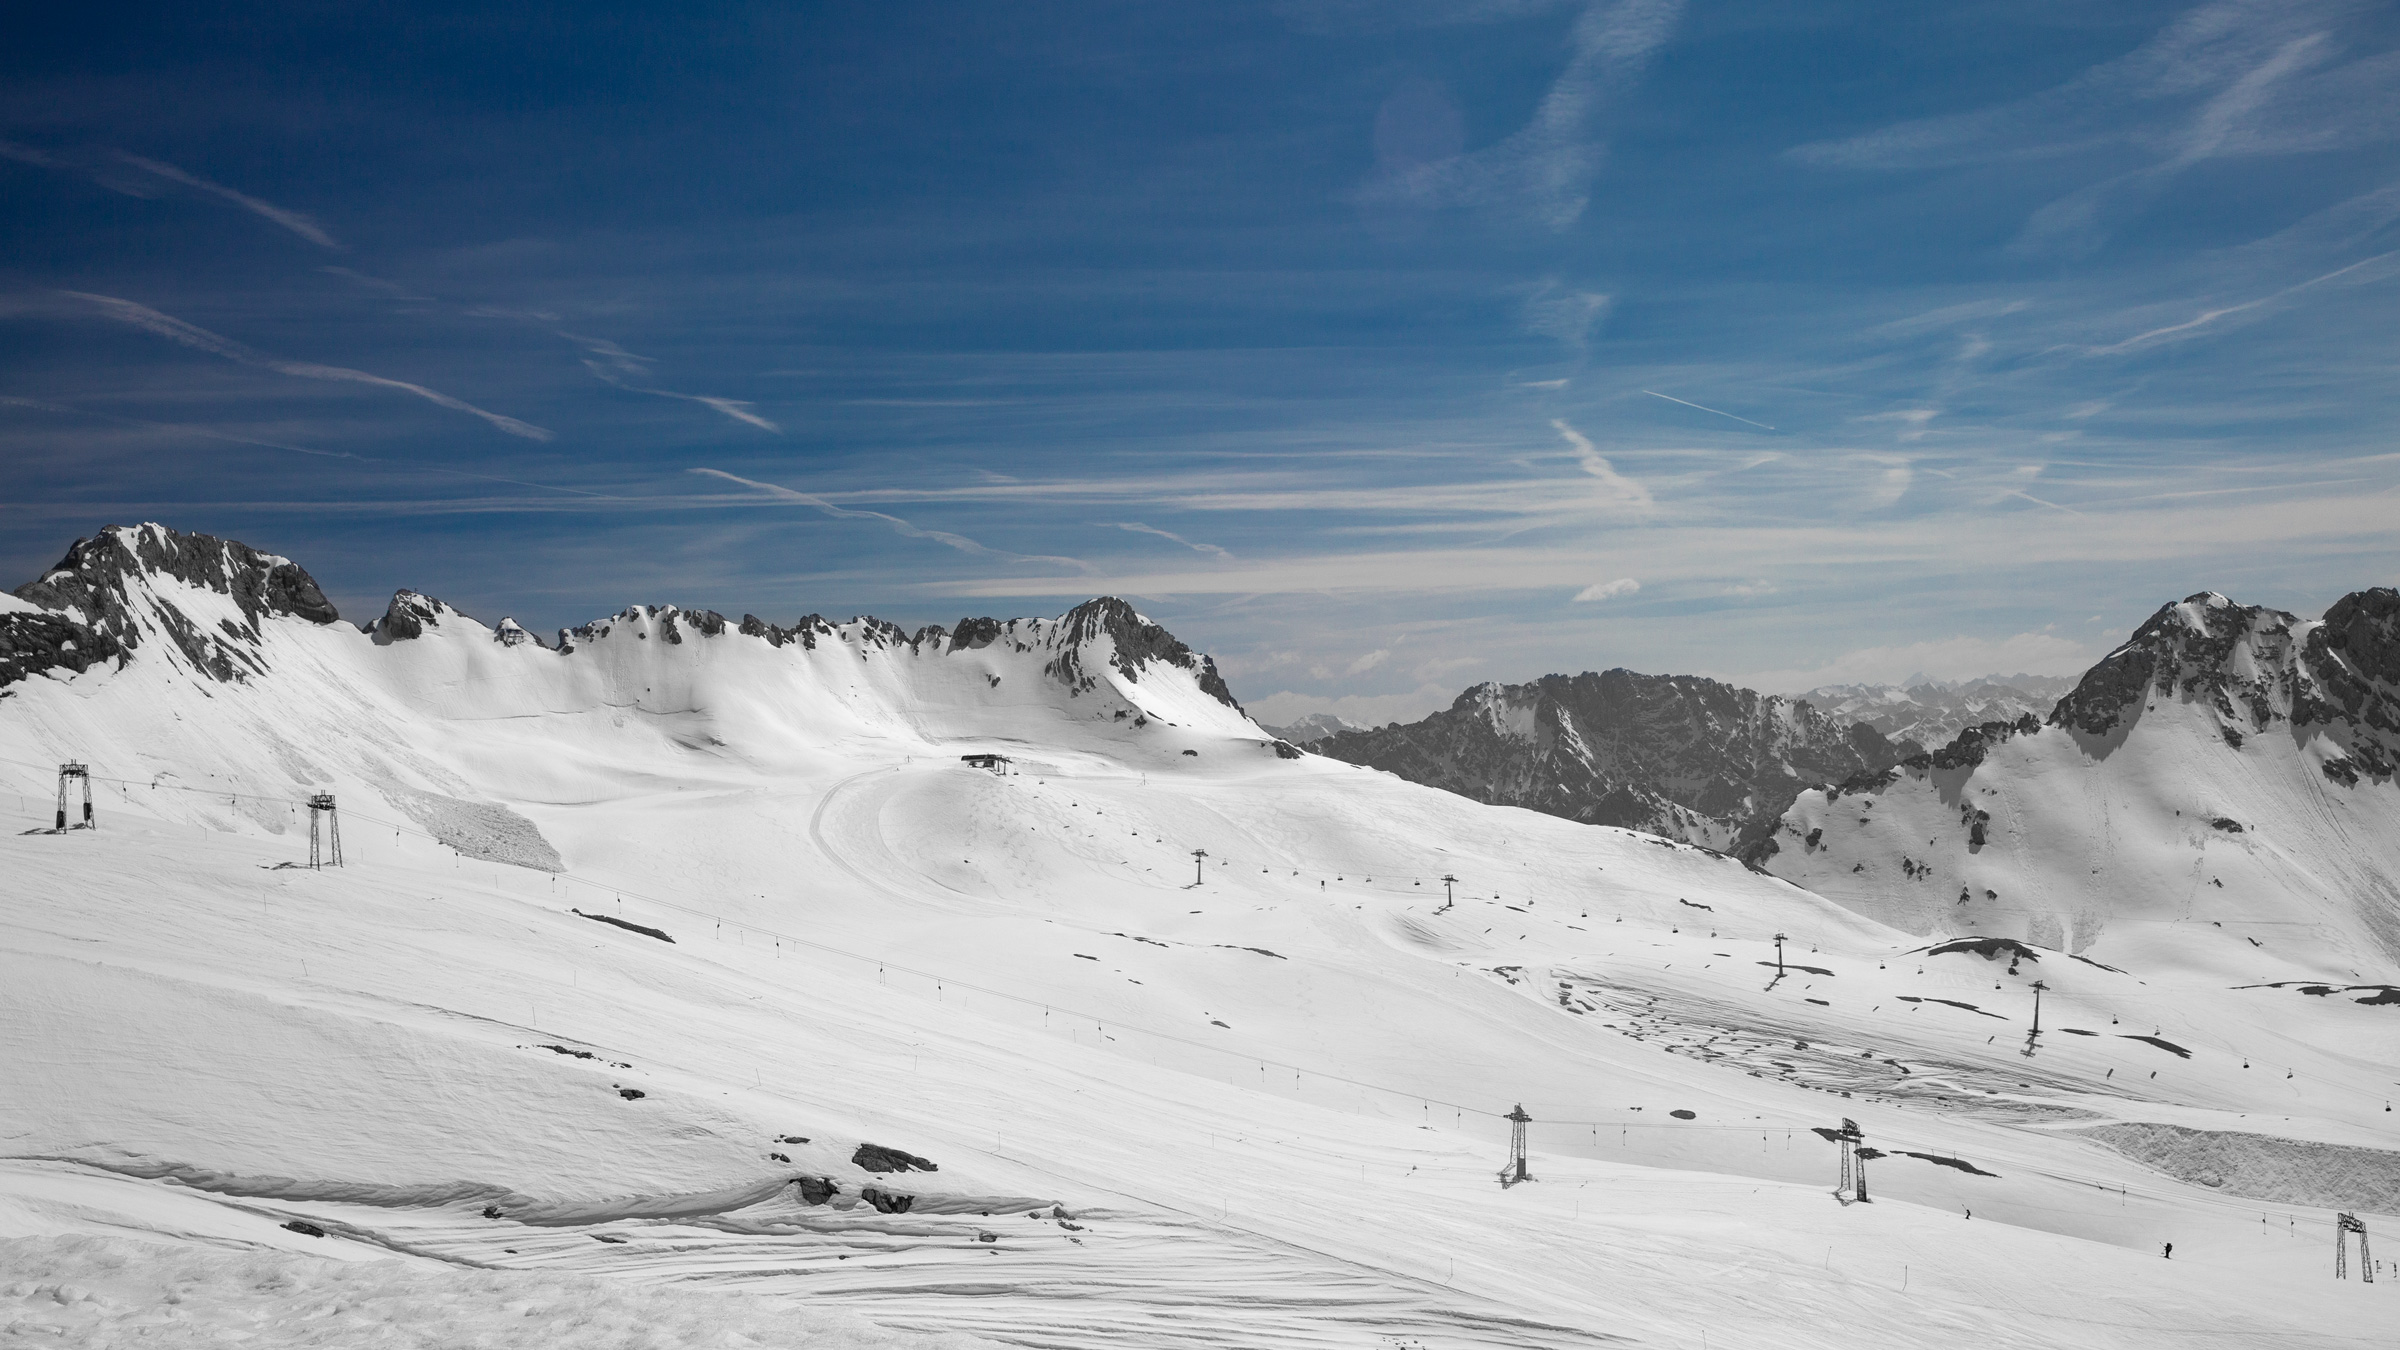 Alpenlandschaft mit schneebedeckten Bergen, Skiliften und blauem Himmel. Alps landscape with snowy mountains, skilifts and blue sky.